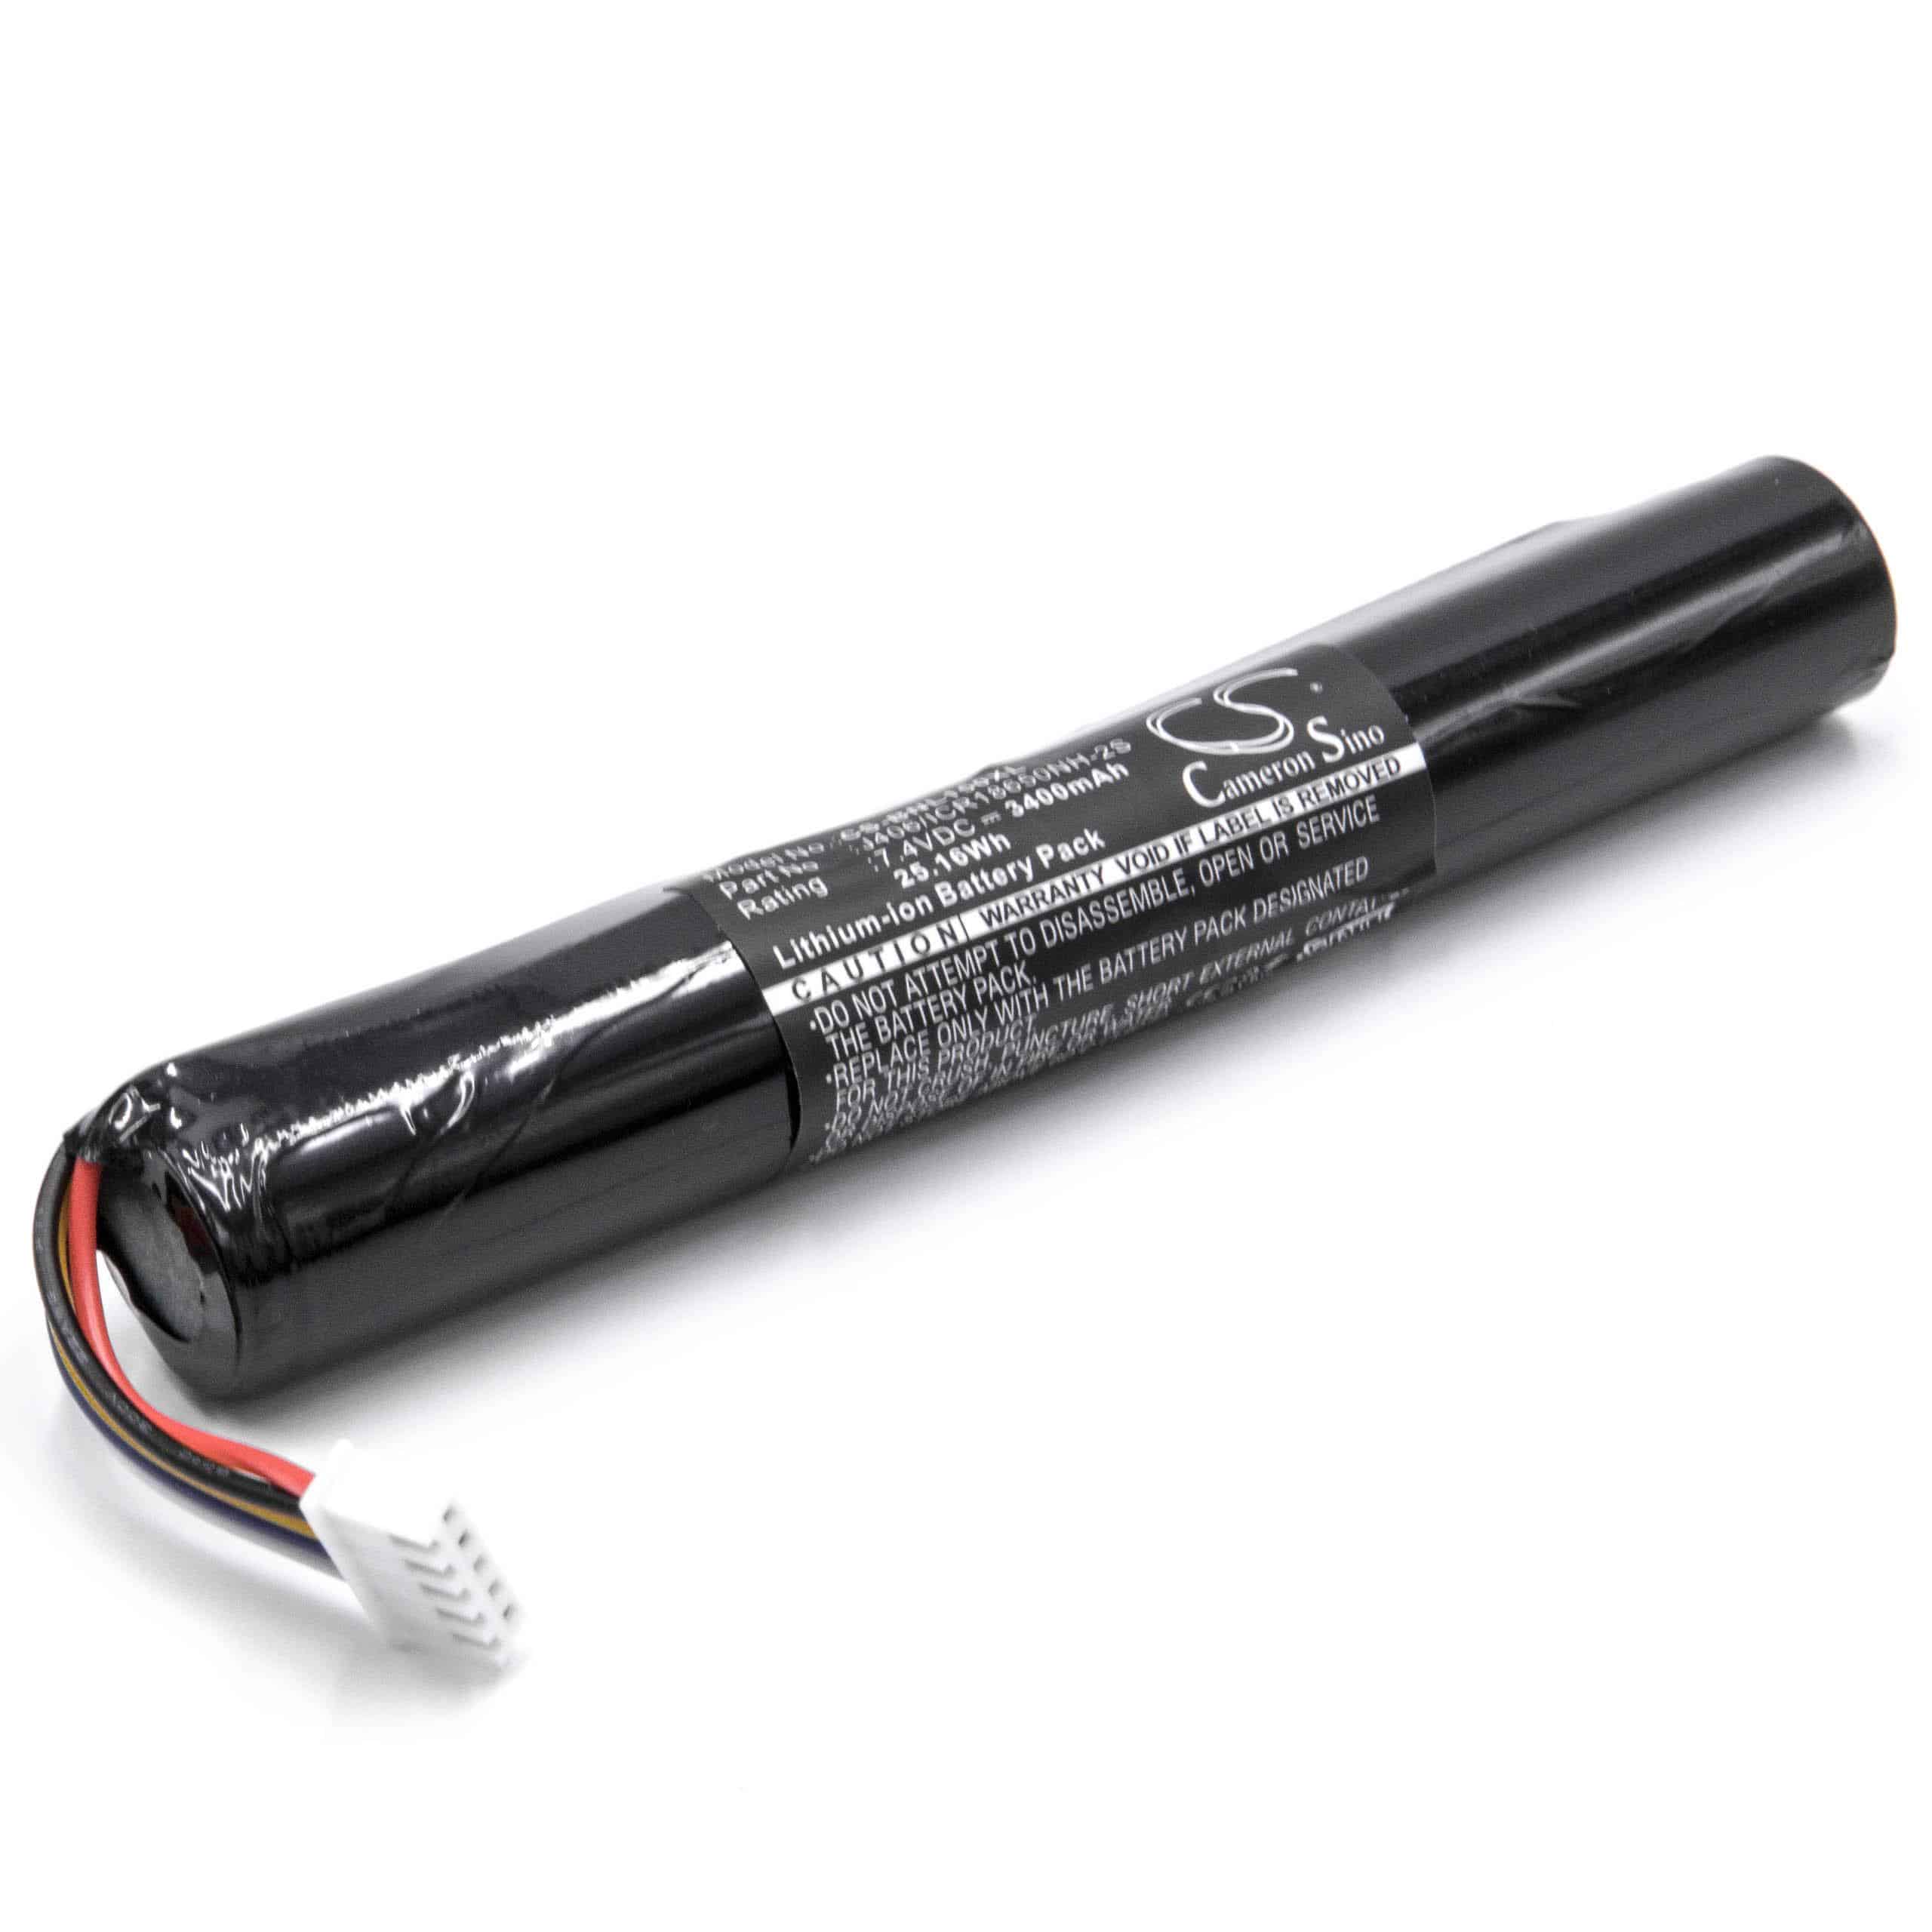 Batería reemplaza Bang & Olufsen J406/ICR18650NH-2S para altavoces Bang & Olufsen - 3400 mAh 7,4 V Li-Ion